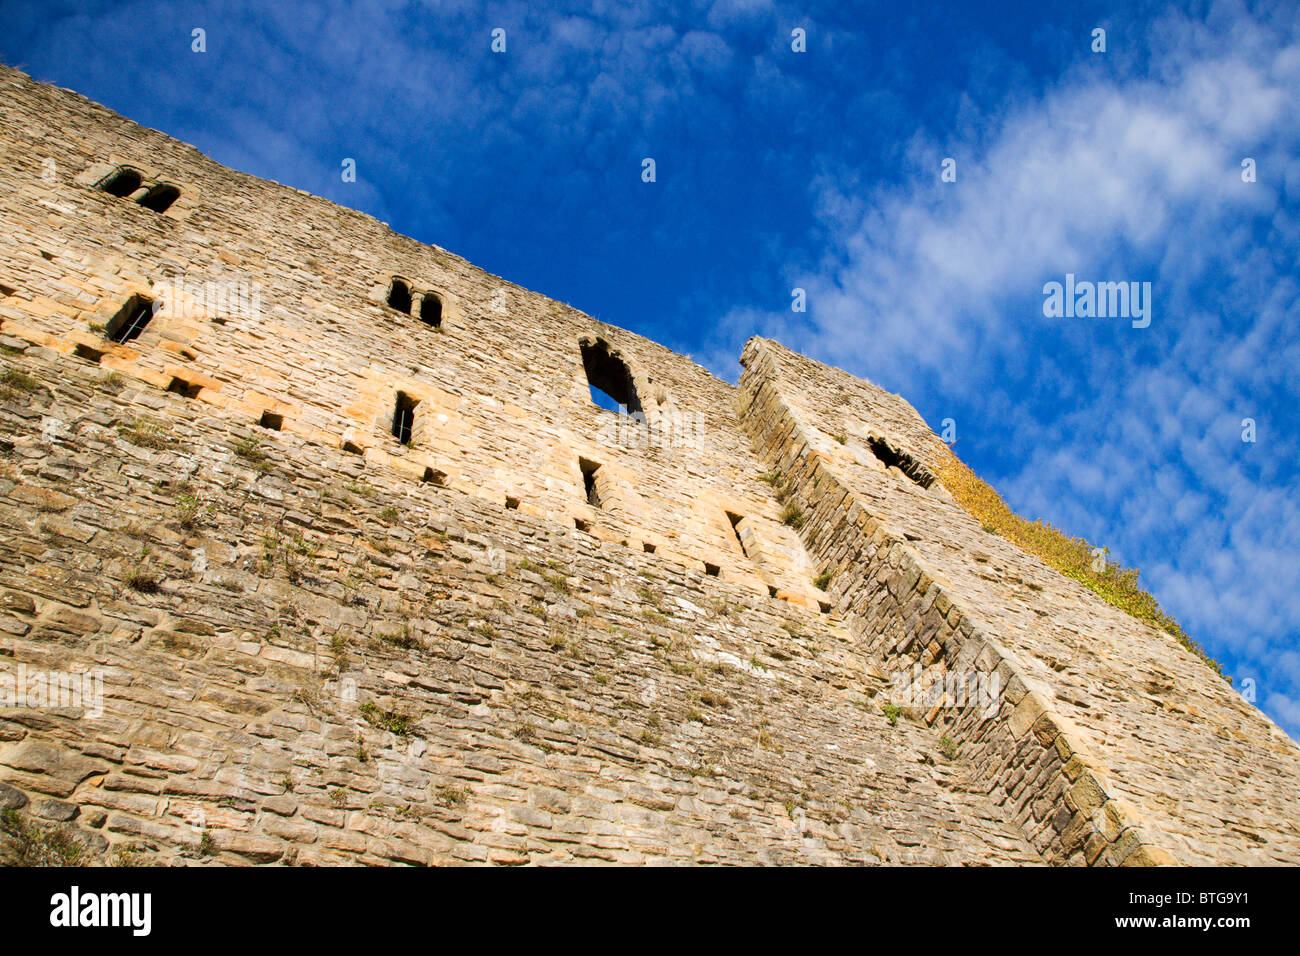 Murs du château contre un ciel bleu pommelé Richmond North Yorkshire Angleterre Banque D'Images